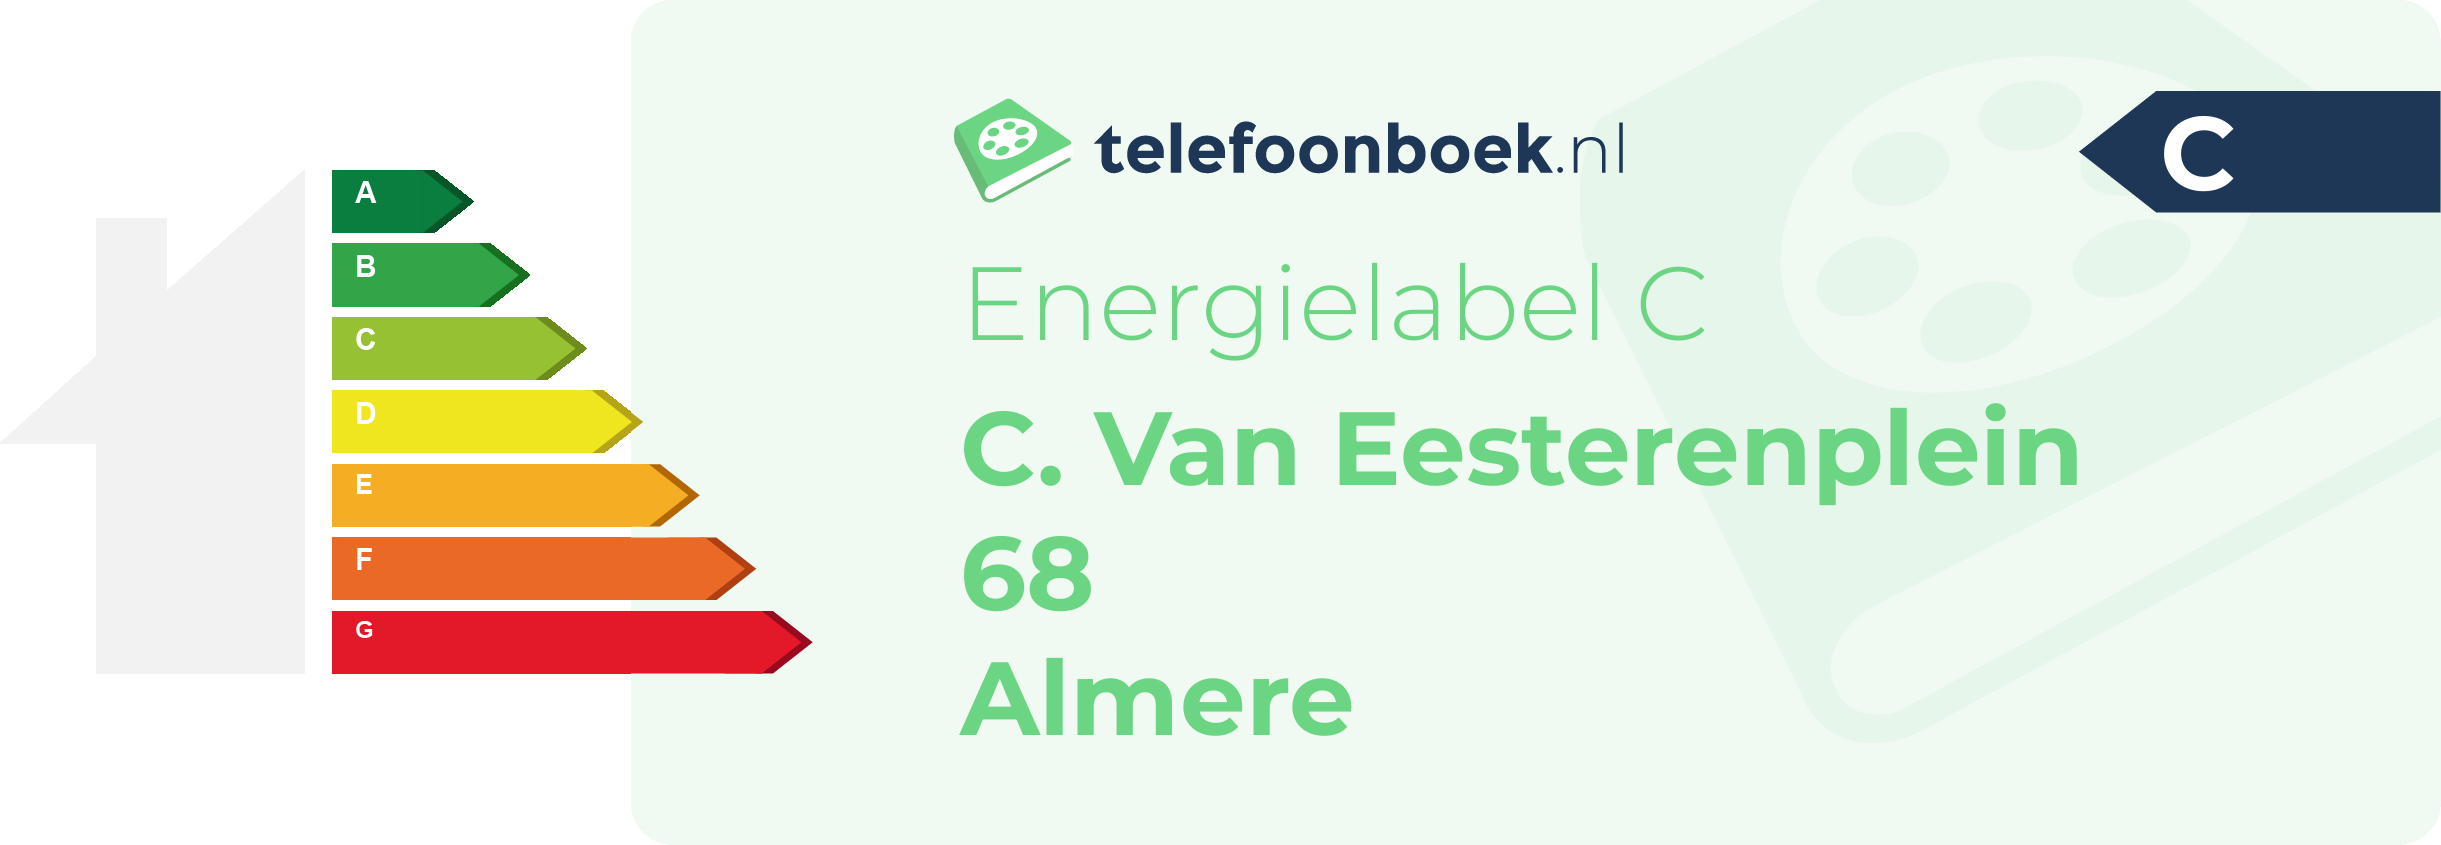 Energielabel C. Van Eesterenplein 68 Almere